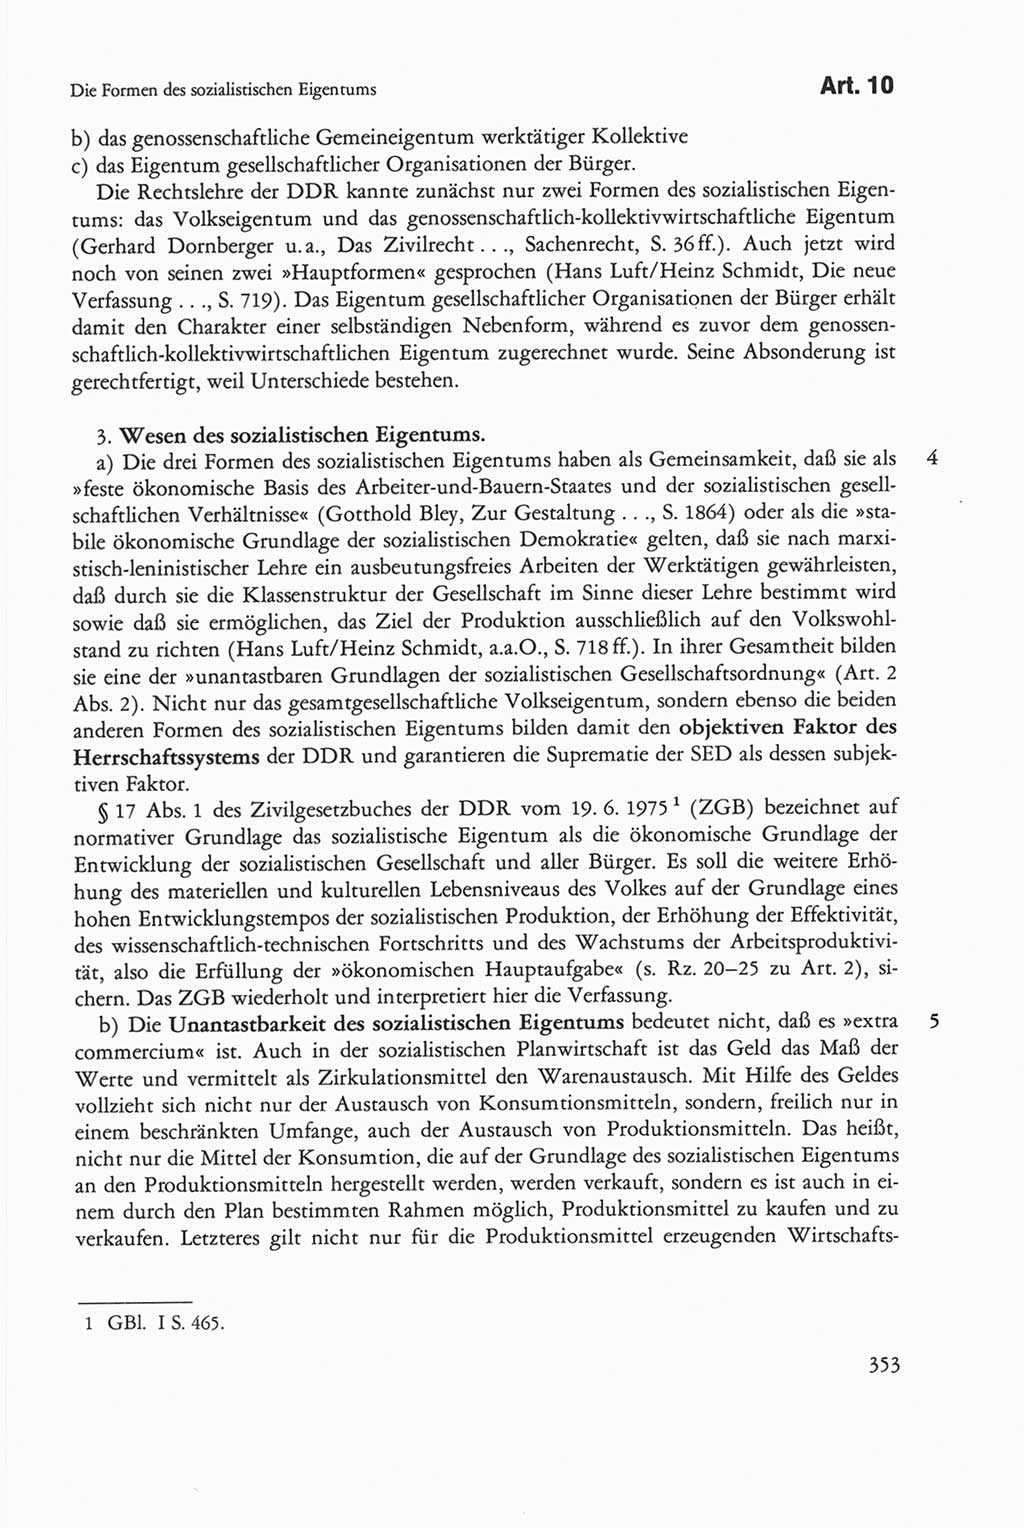 Die sozialistische Verfassung der Deutschen Demokratischen Republik (DDR), Kommentar mit einem Nachtrag 1997, Seite 353 (Soz. Verf. DDR Komm. Nachtr. 1997, S. 353)